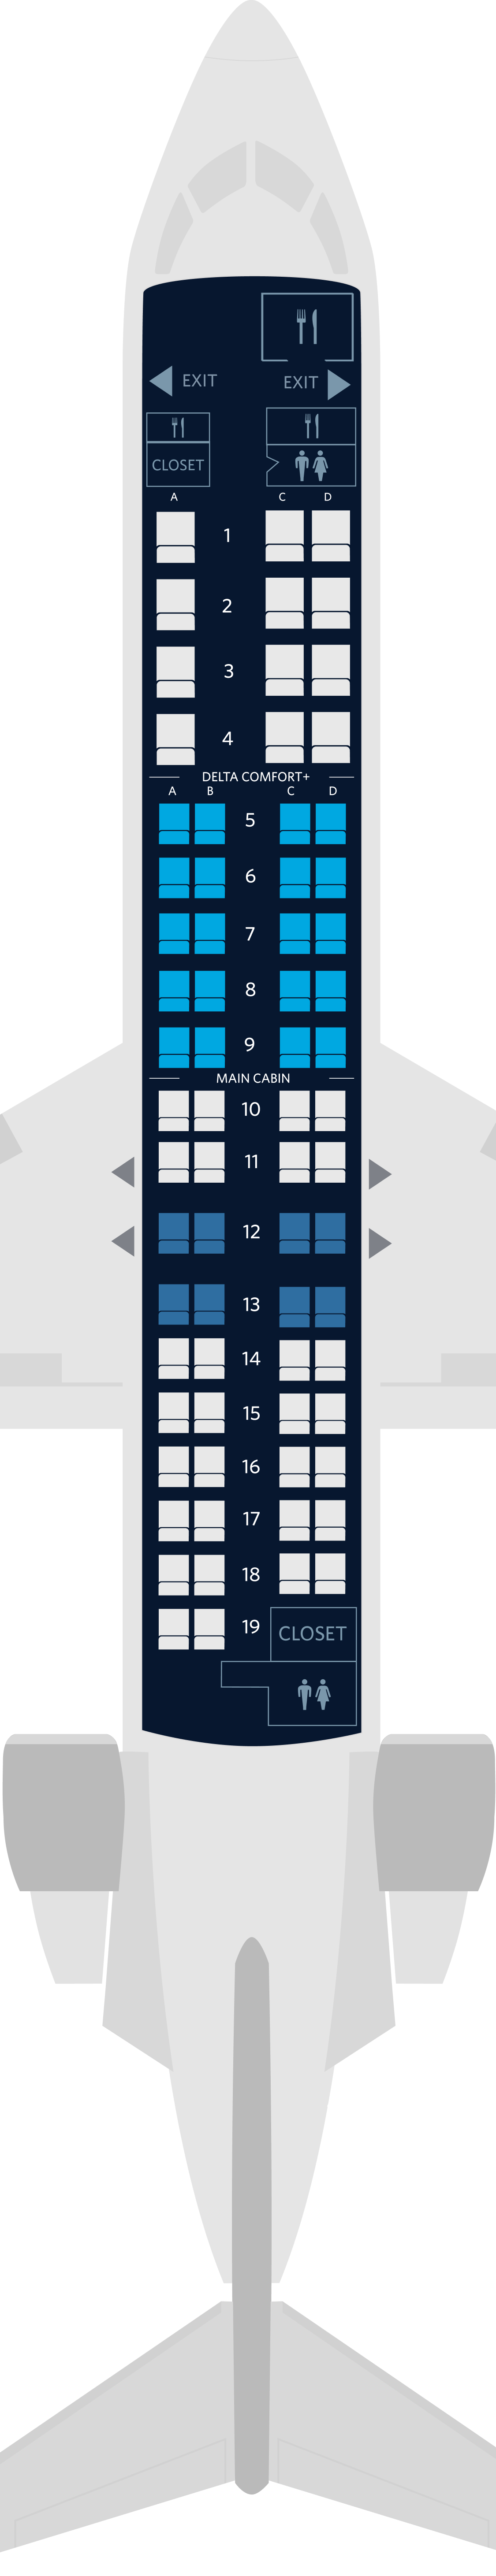 Canadair Crj 900 Seats